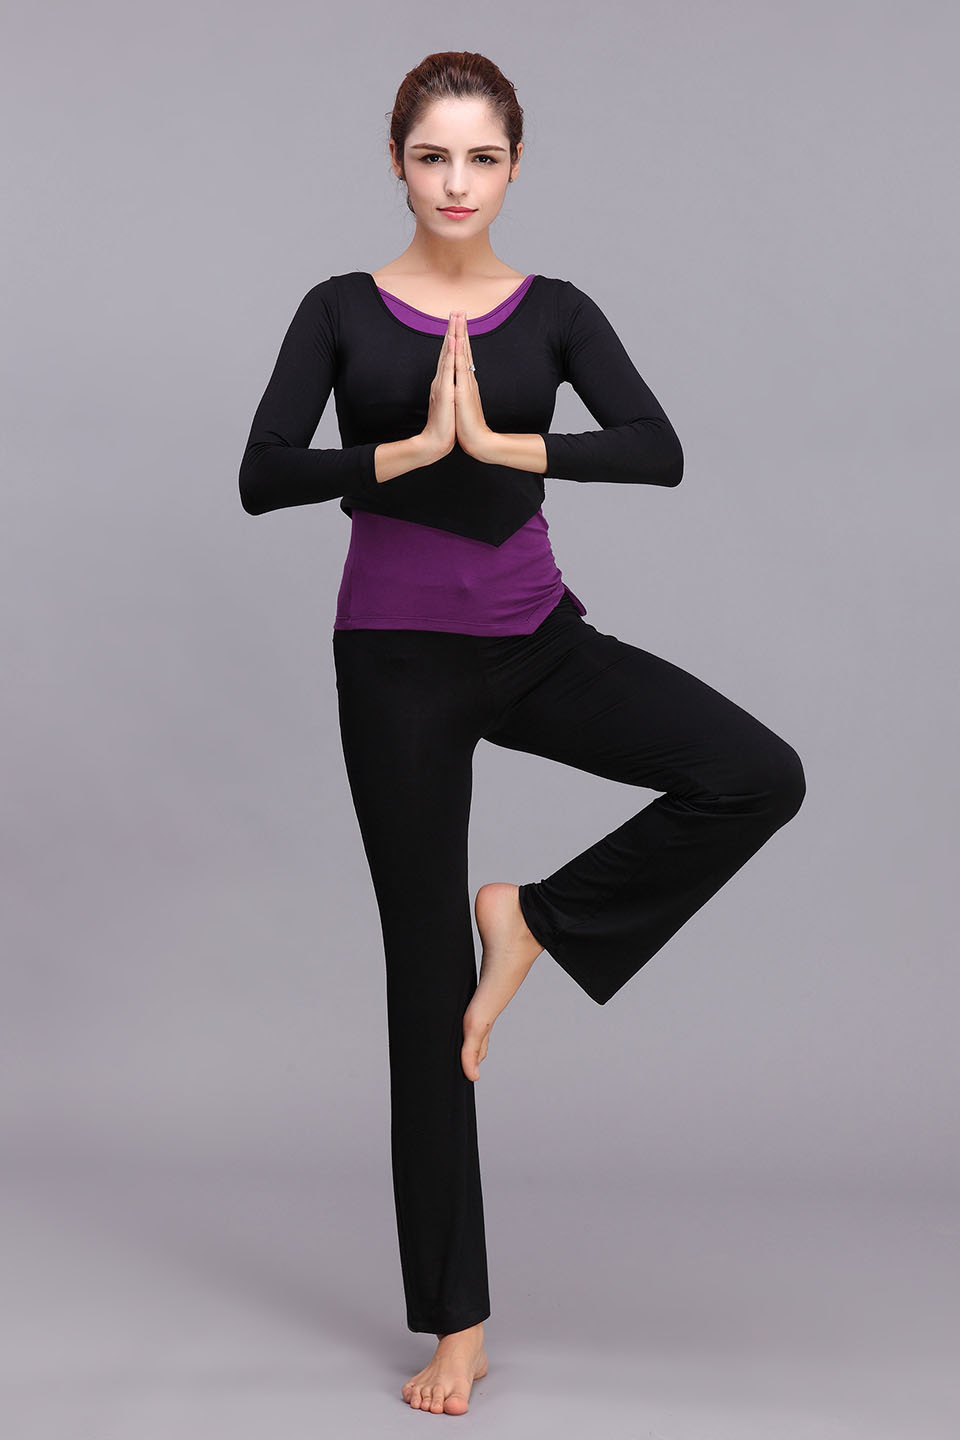 yoga dress for women